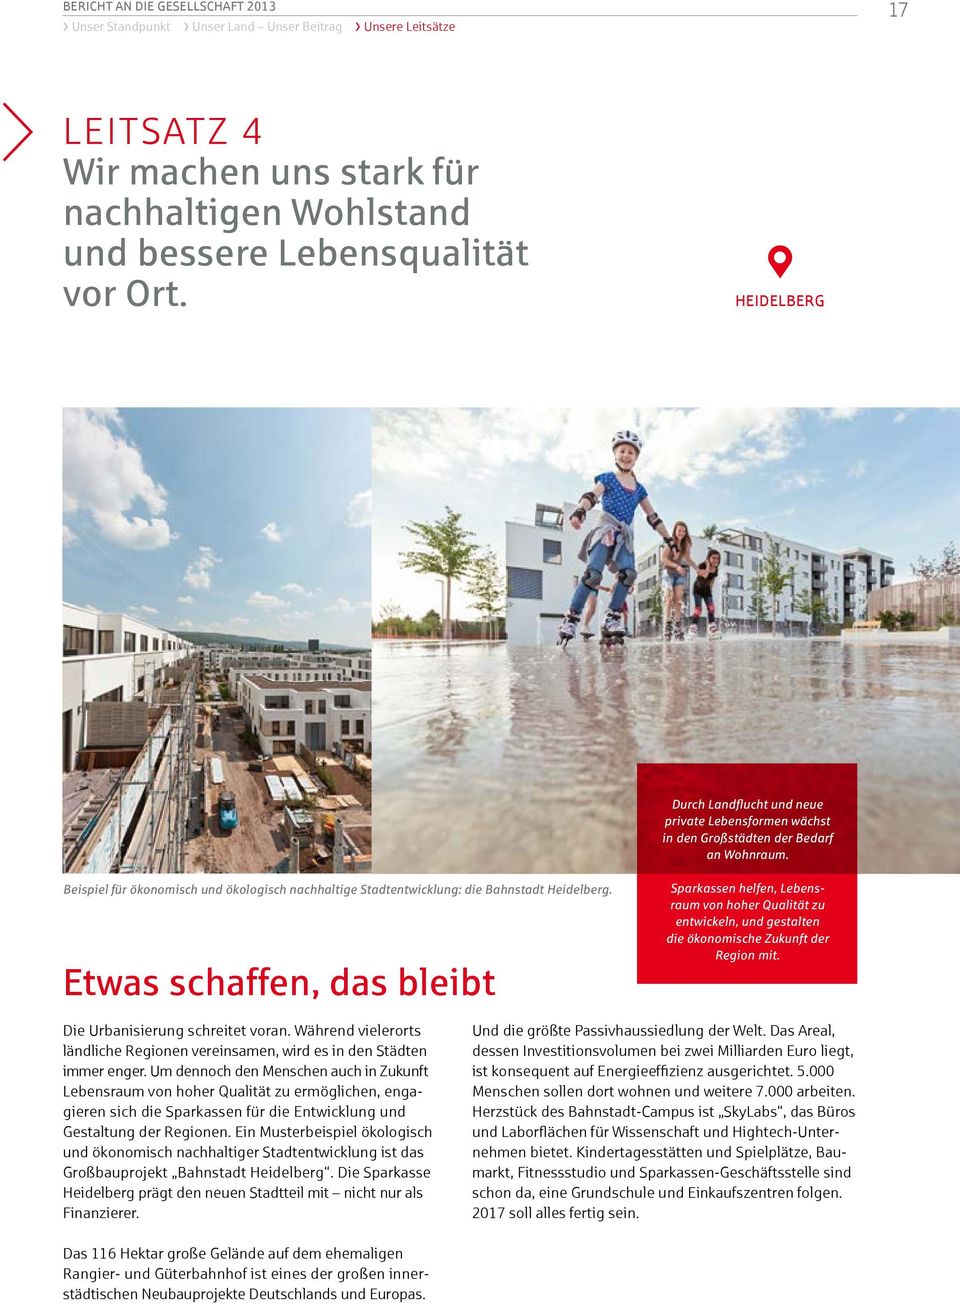 Beispiel für ökonomisch und ökologisch nachhaltige Stadtentwicklung: die Bahnstadt Heidelberg.